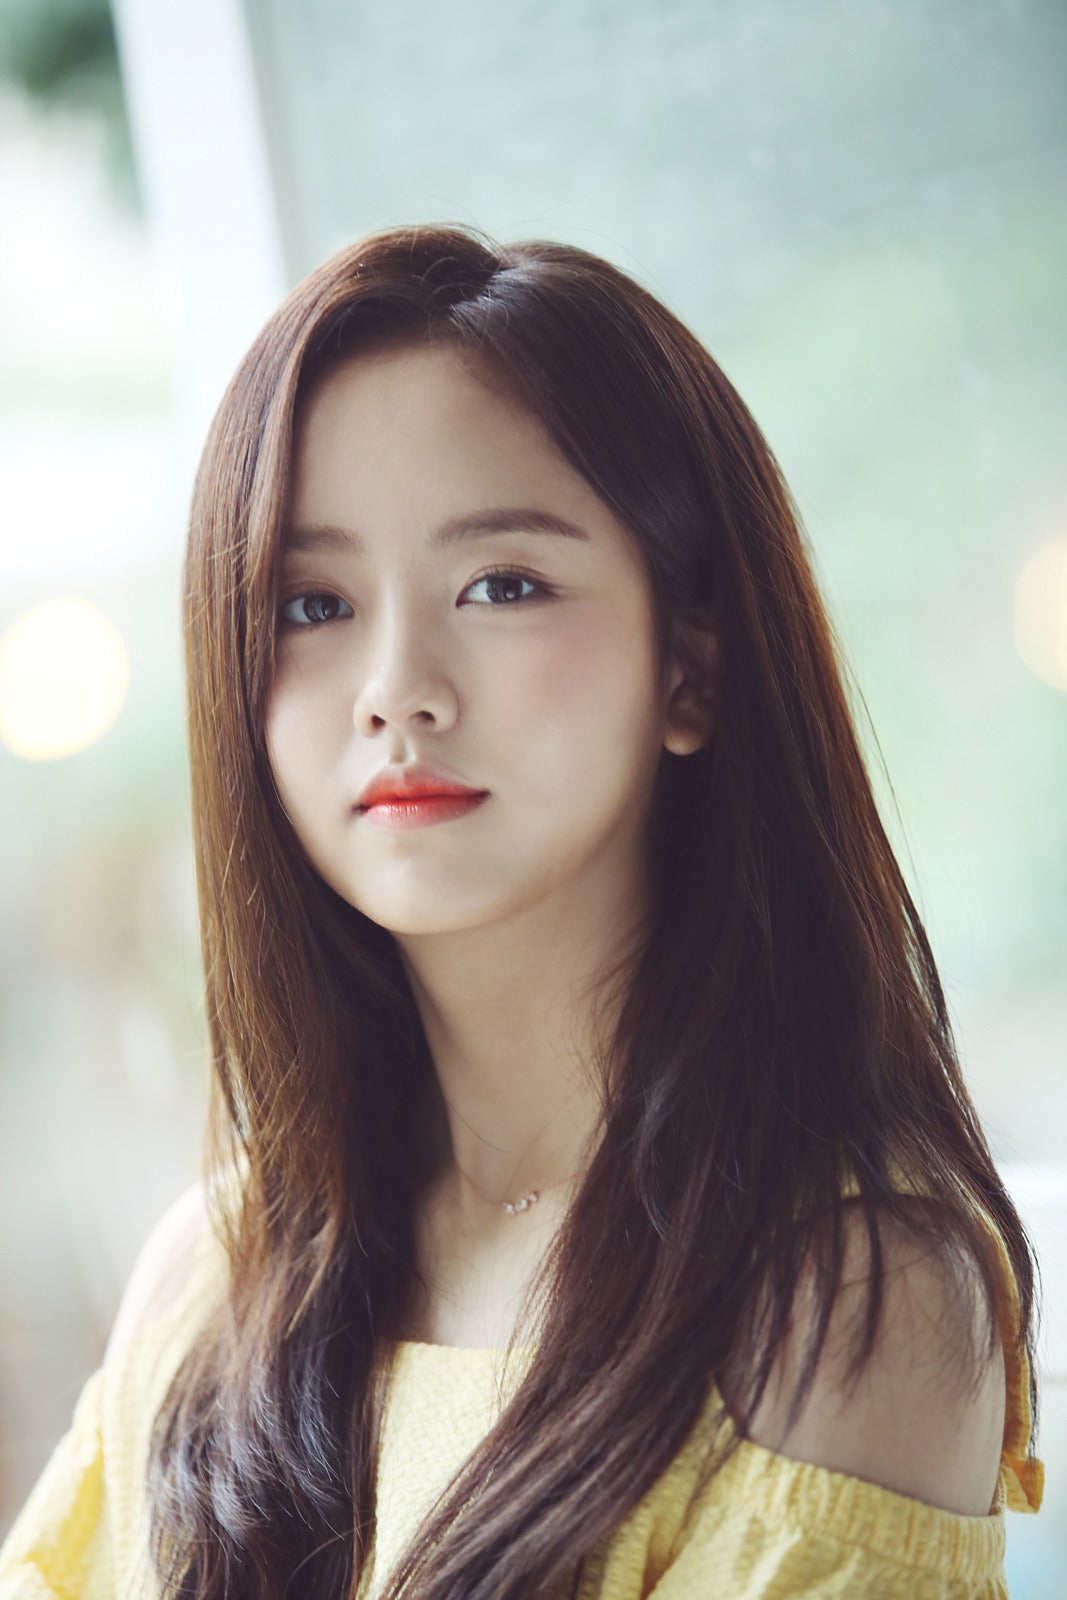 นักแสดงเกาหลี สวยที่สุด